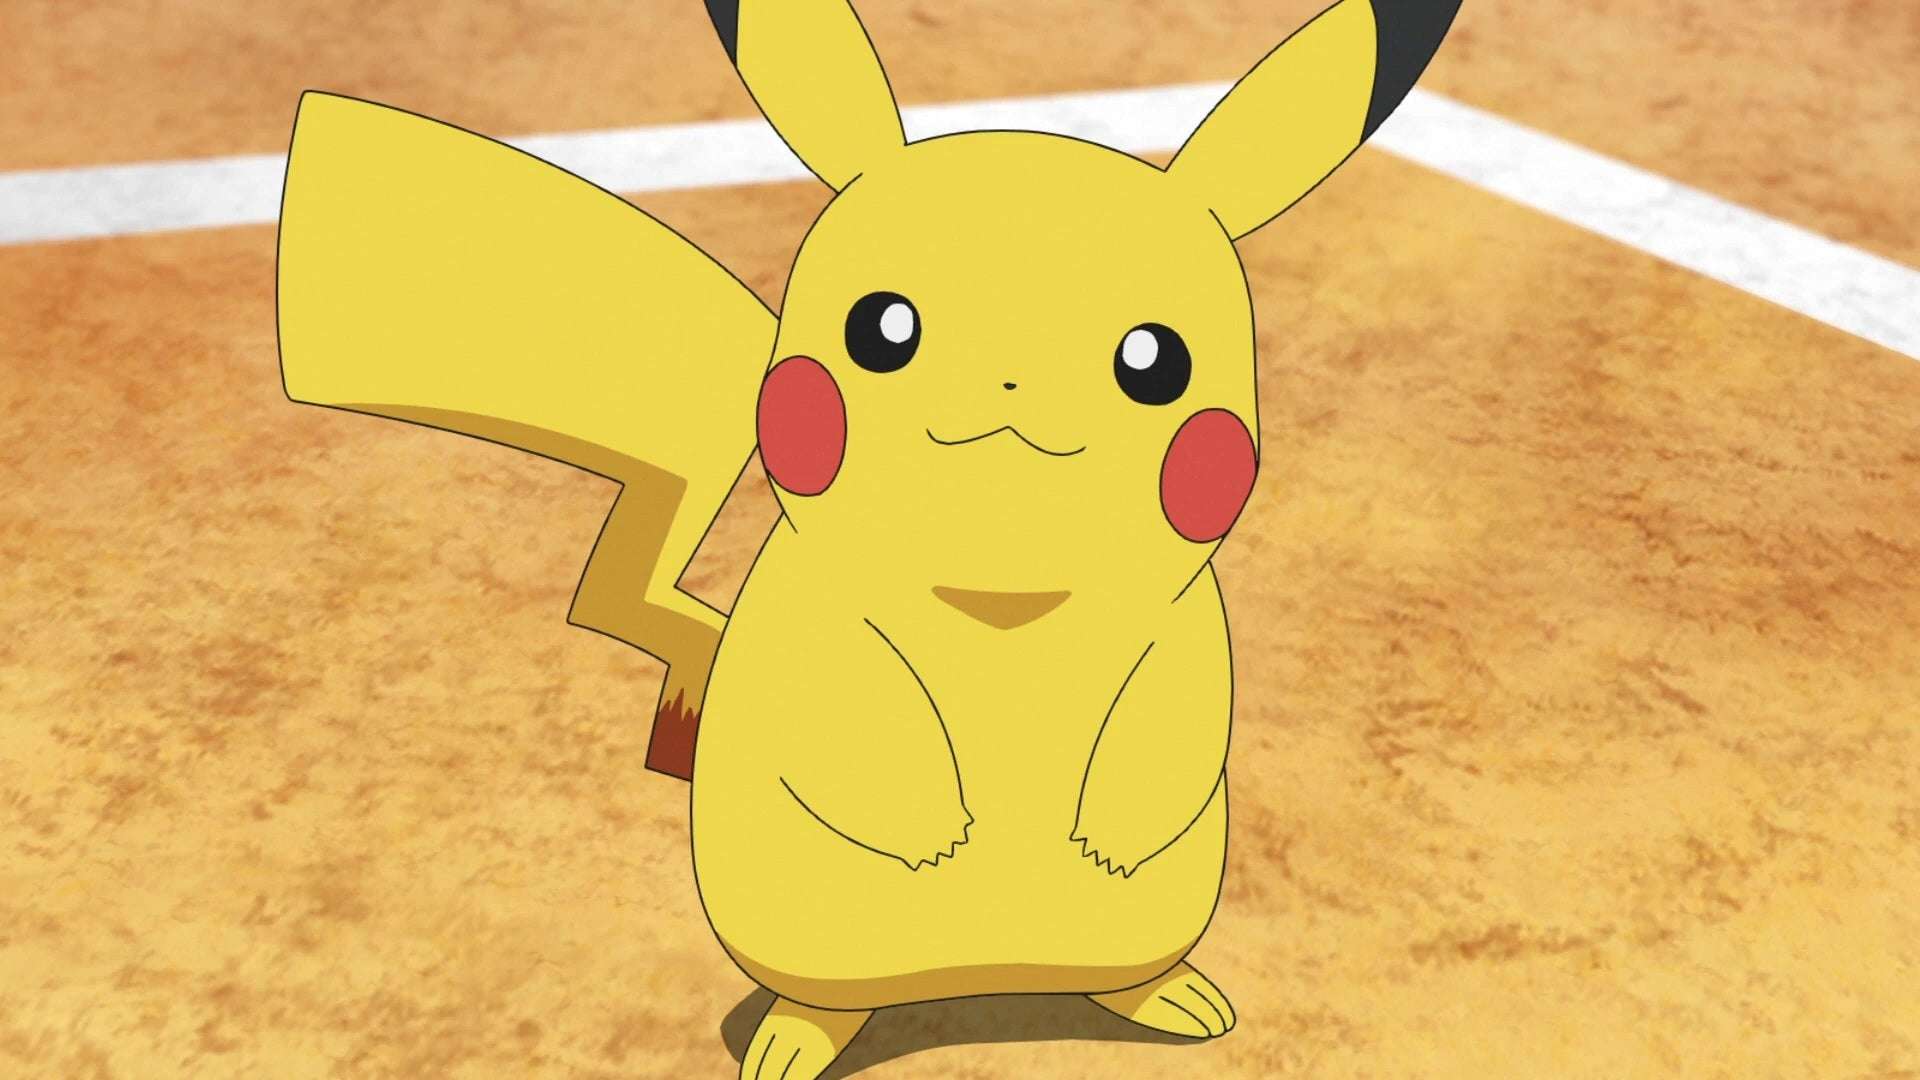 Pikachu in the Pokemon anime